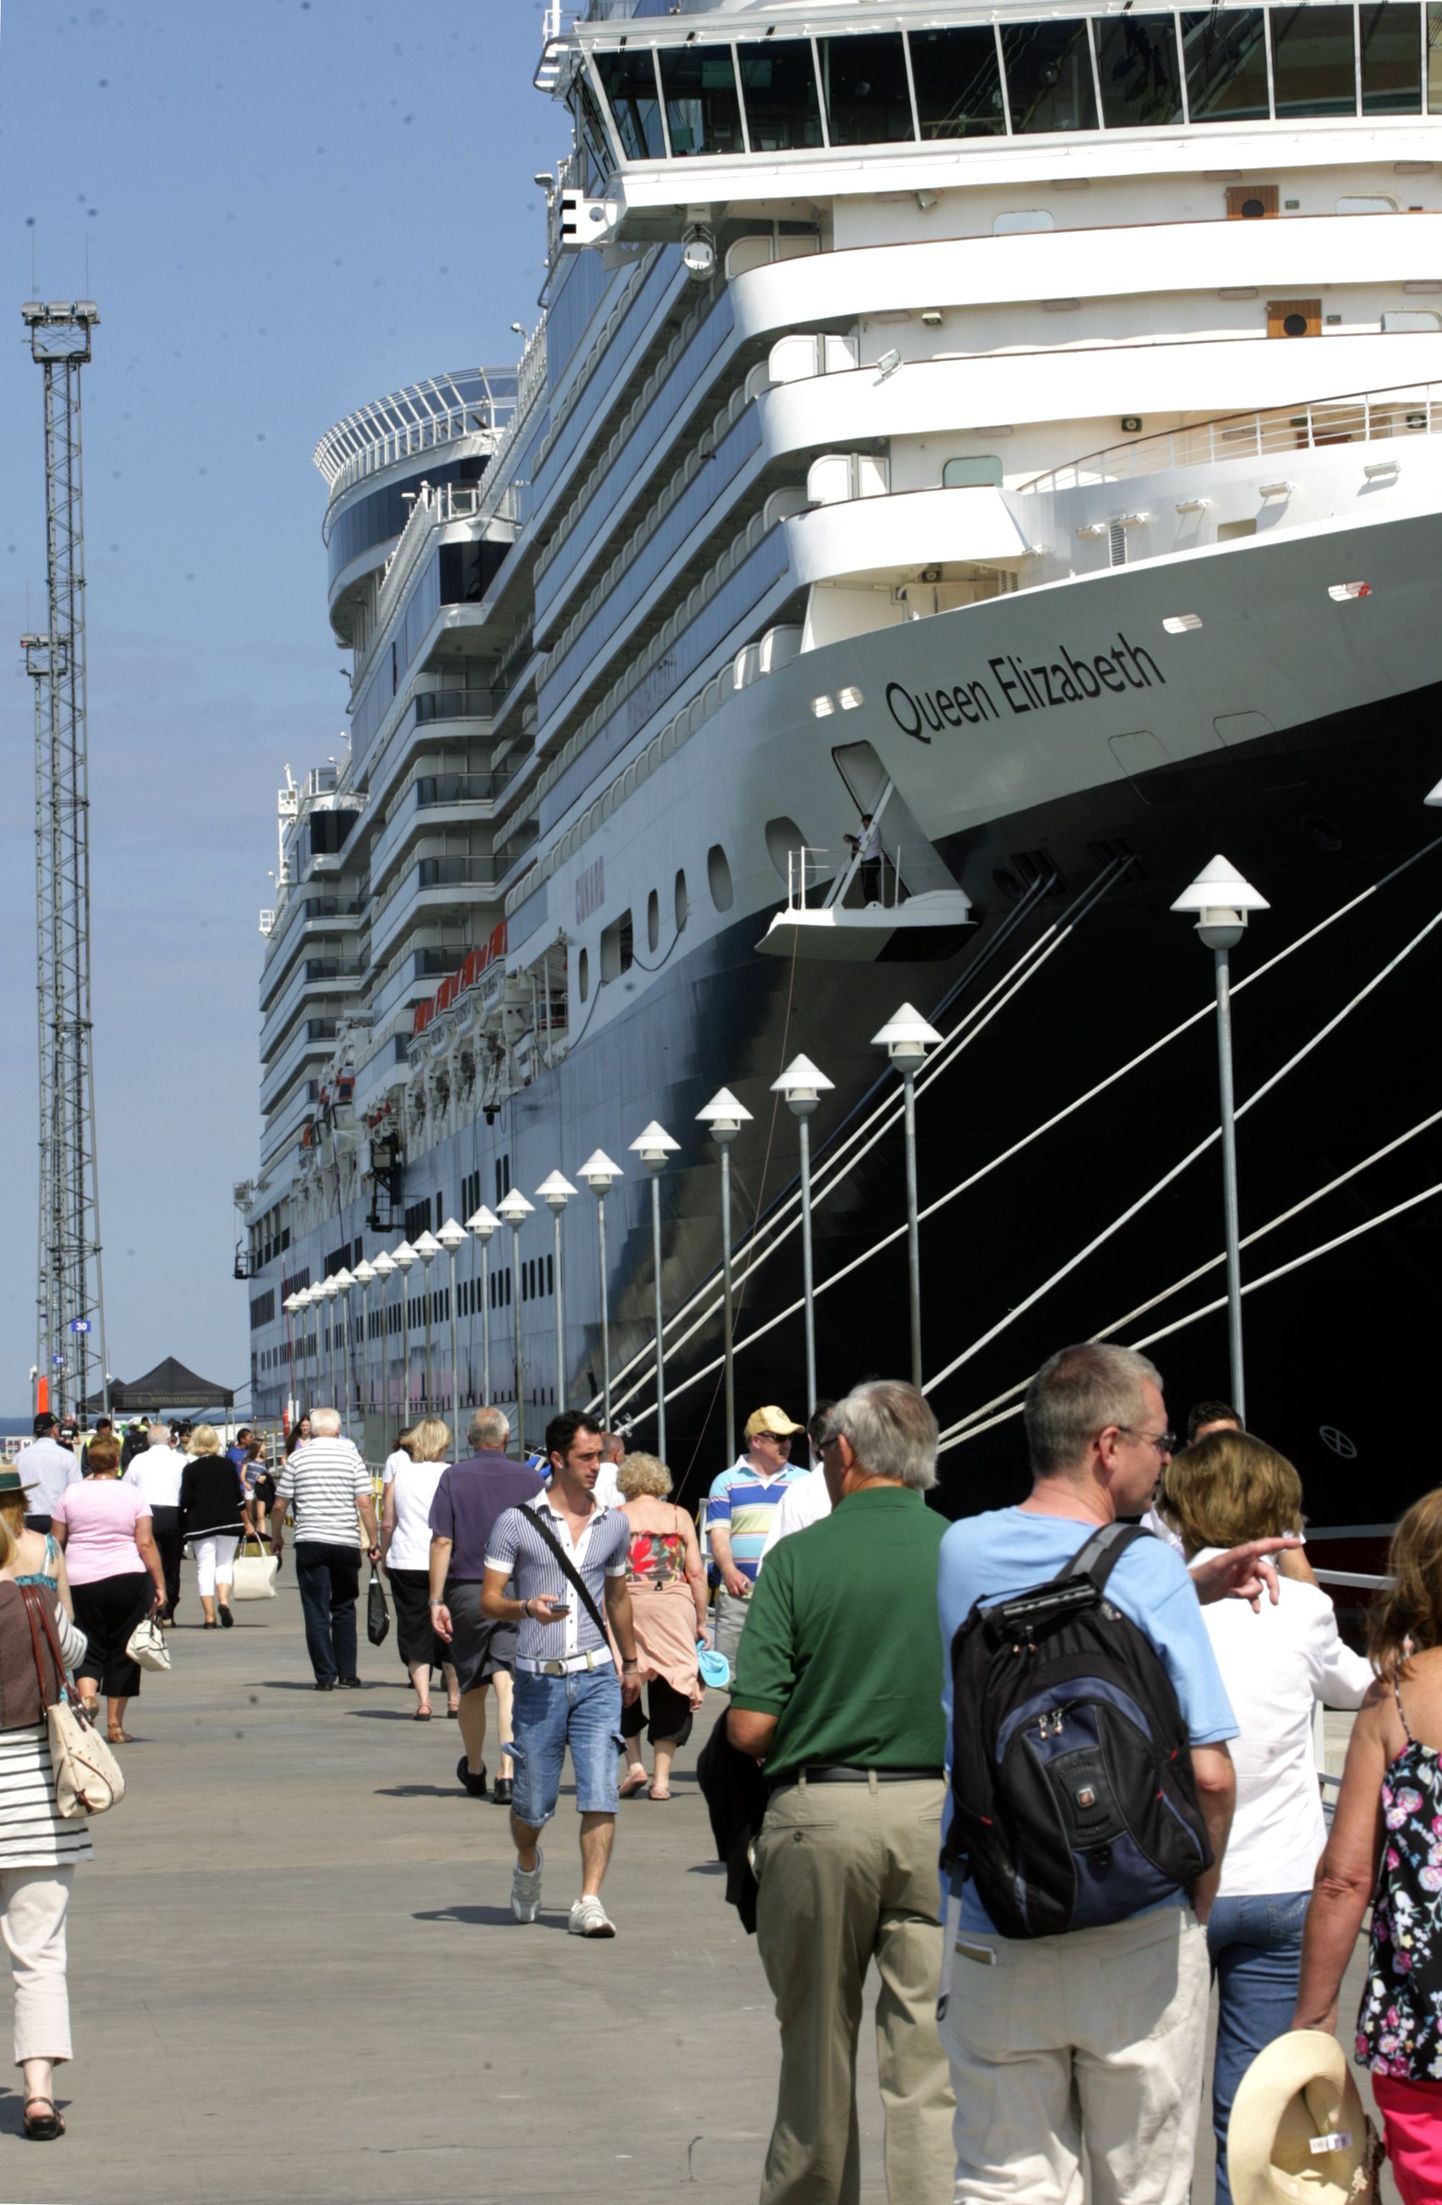 Maailma üks suurimaid ja luksuslikumaid kruiisilaevu «Queen Elizabeth» Tallinna sadamas.